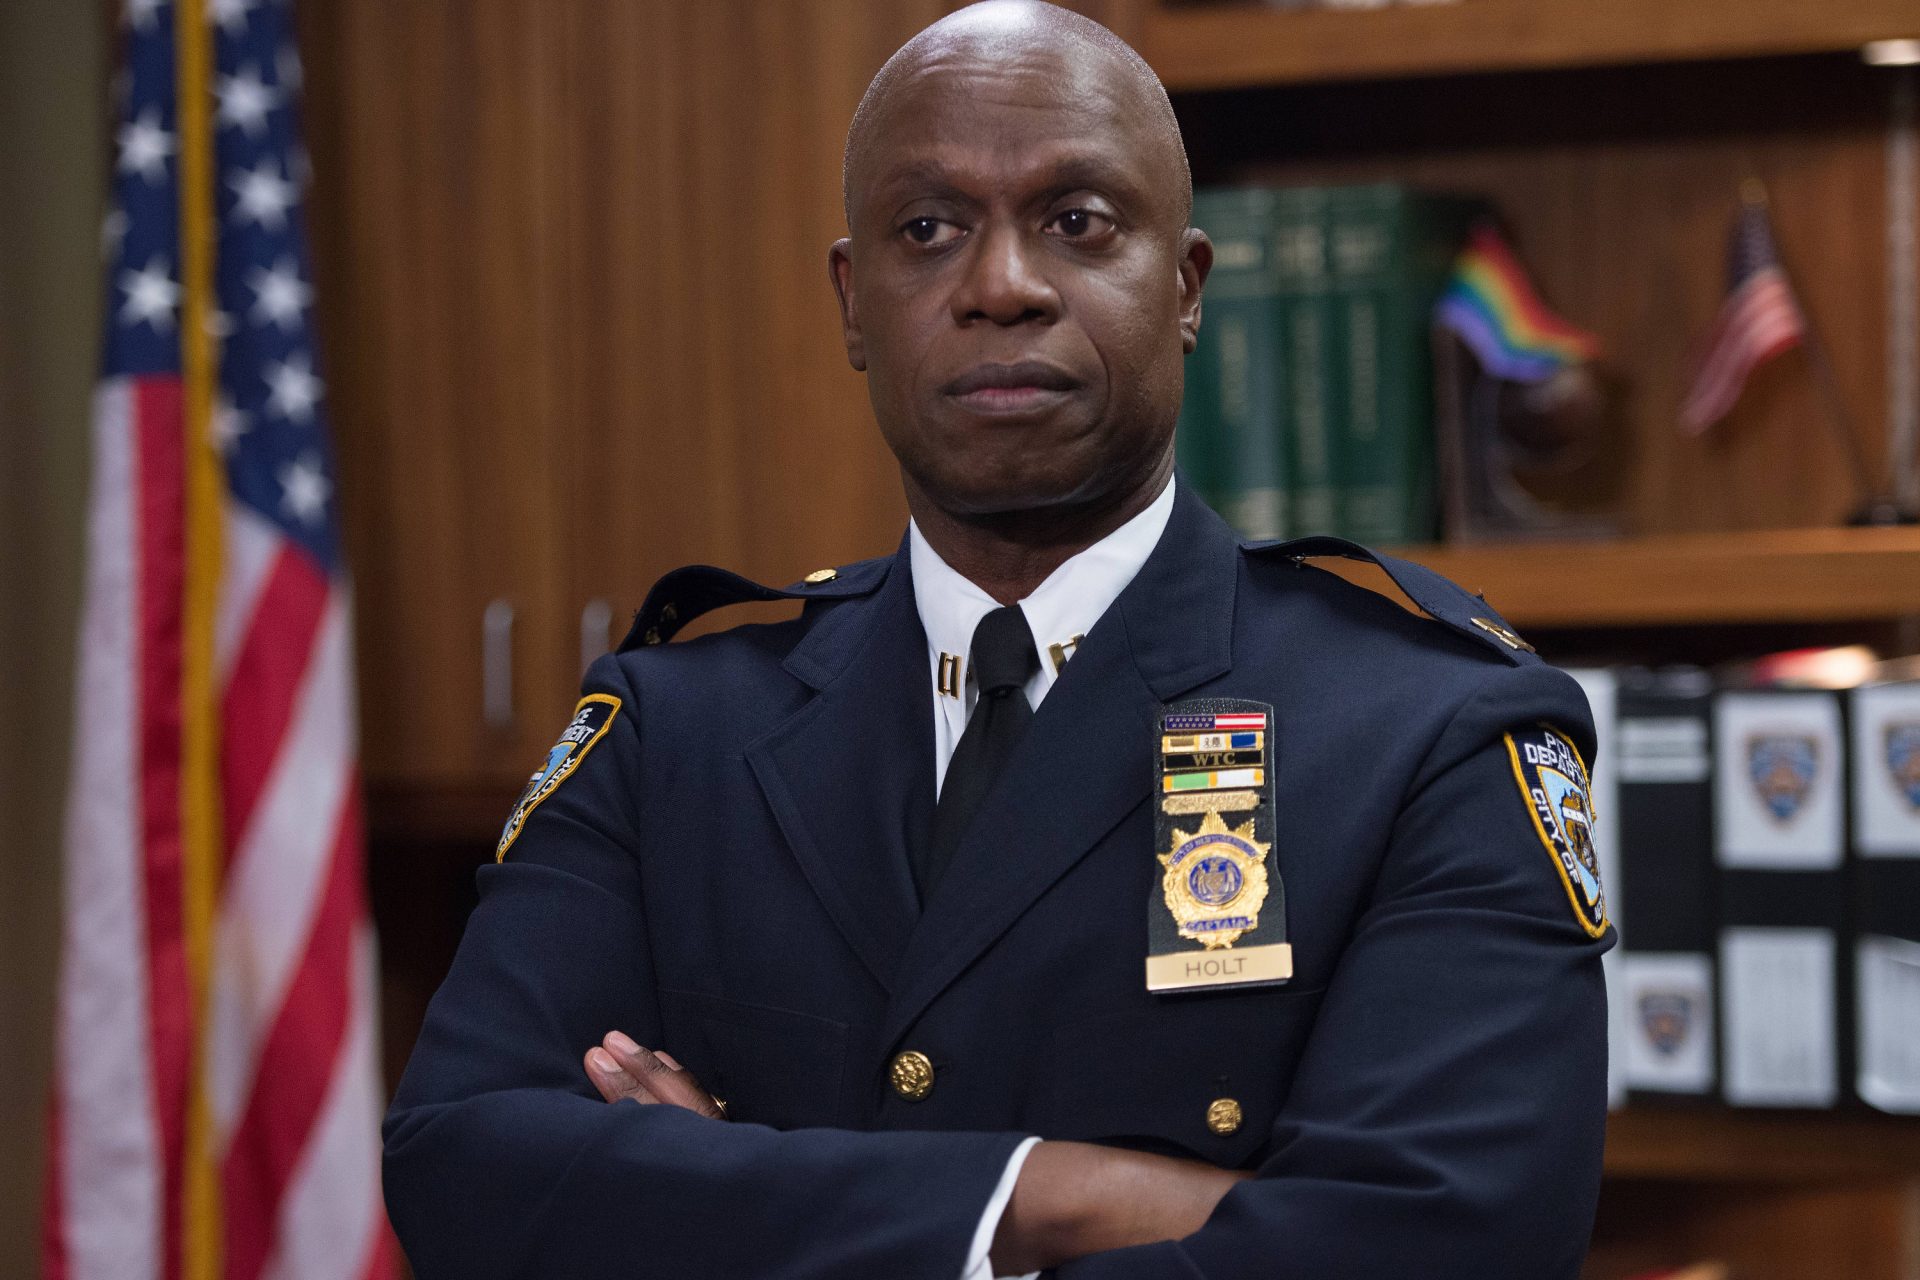 Capitán Raymond Holt en 'Brooklyn Nine-Nine'